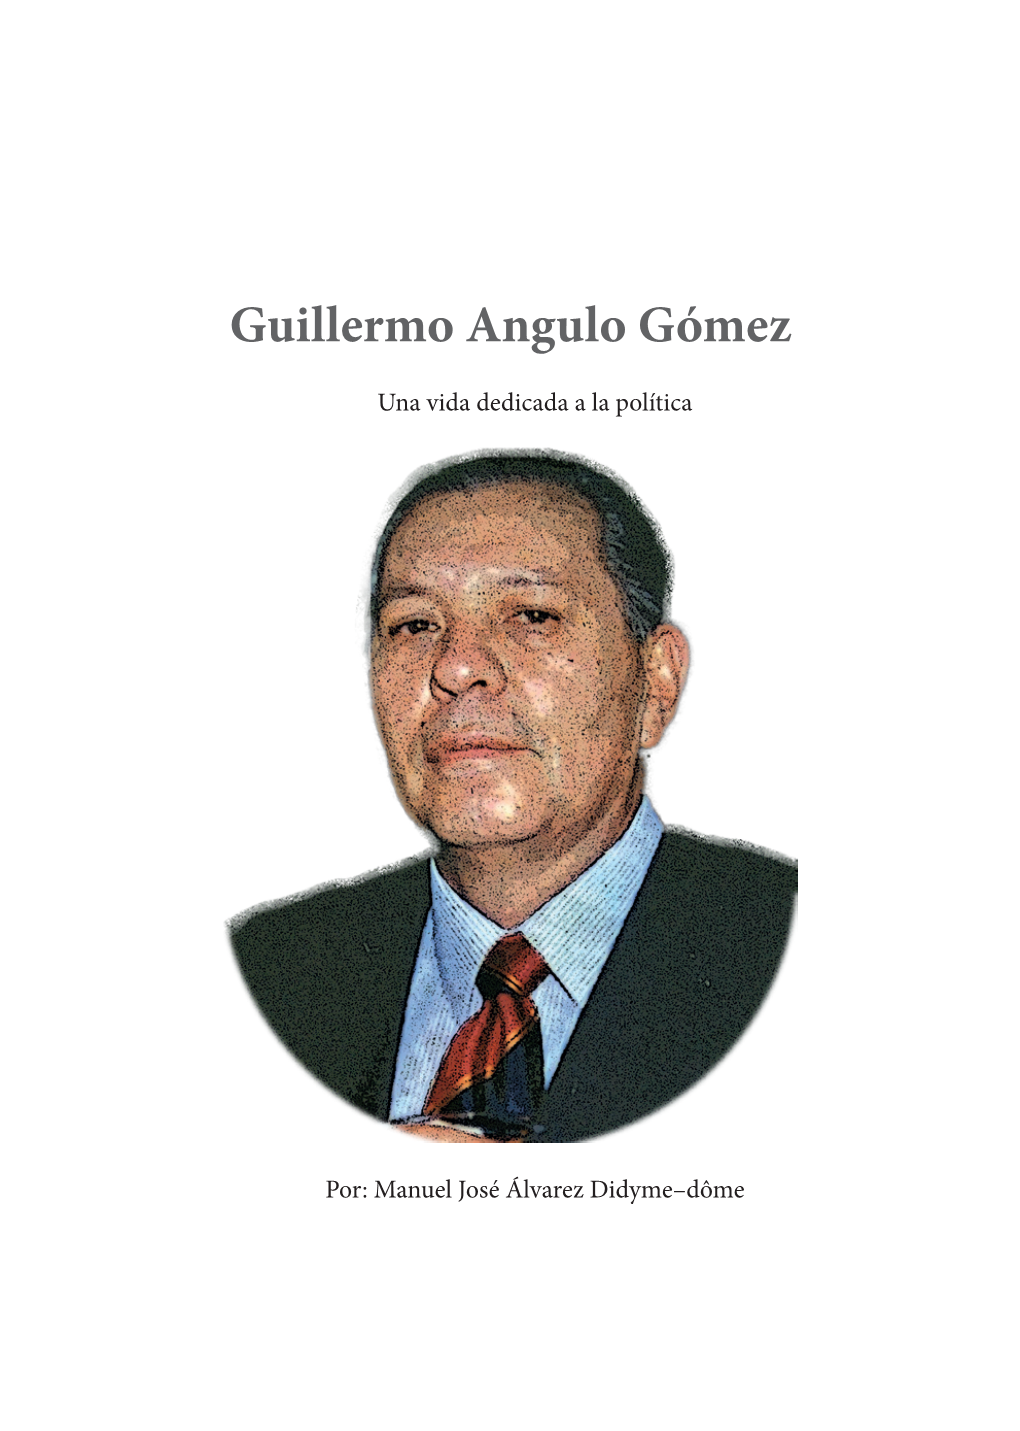 Guillermo Angulo Gómez